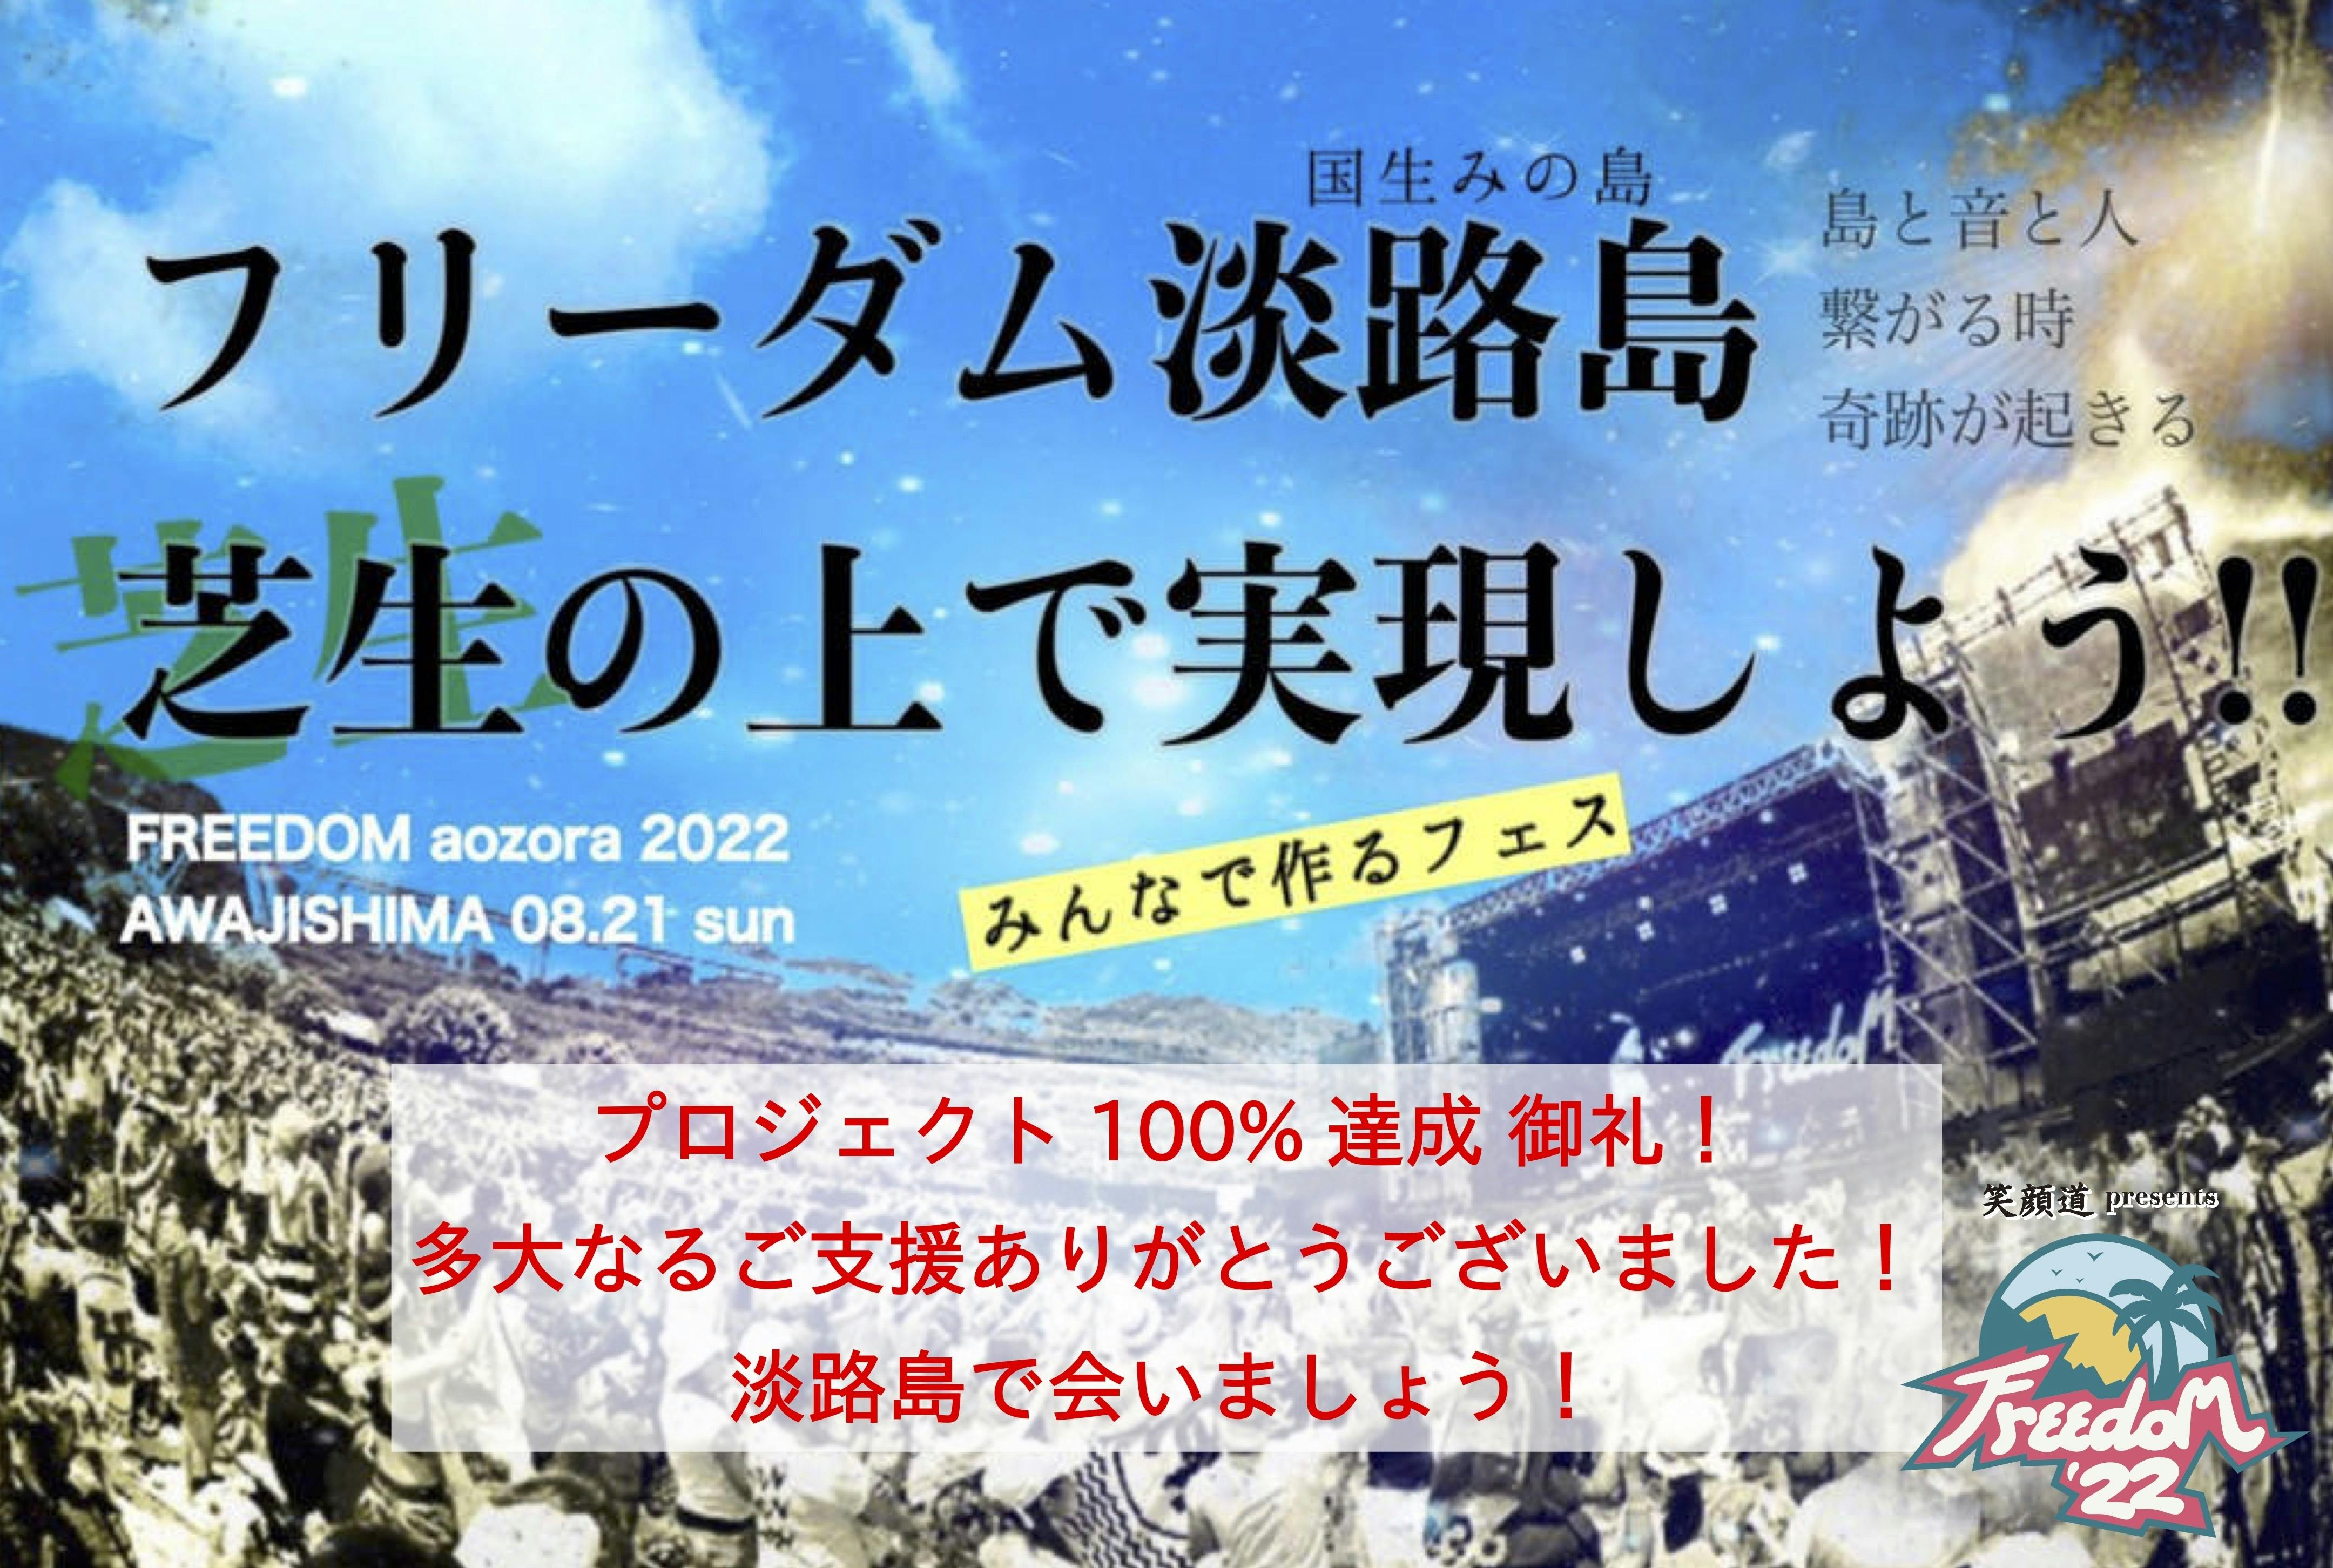 Freedom 淡路島 のチケット(2枚)売ります☆+゜ - コンサート